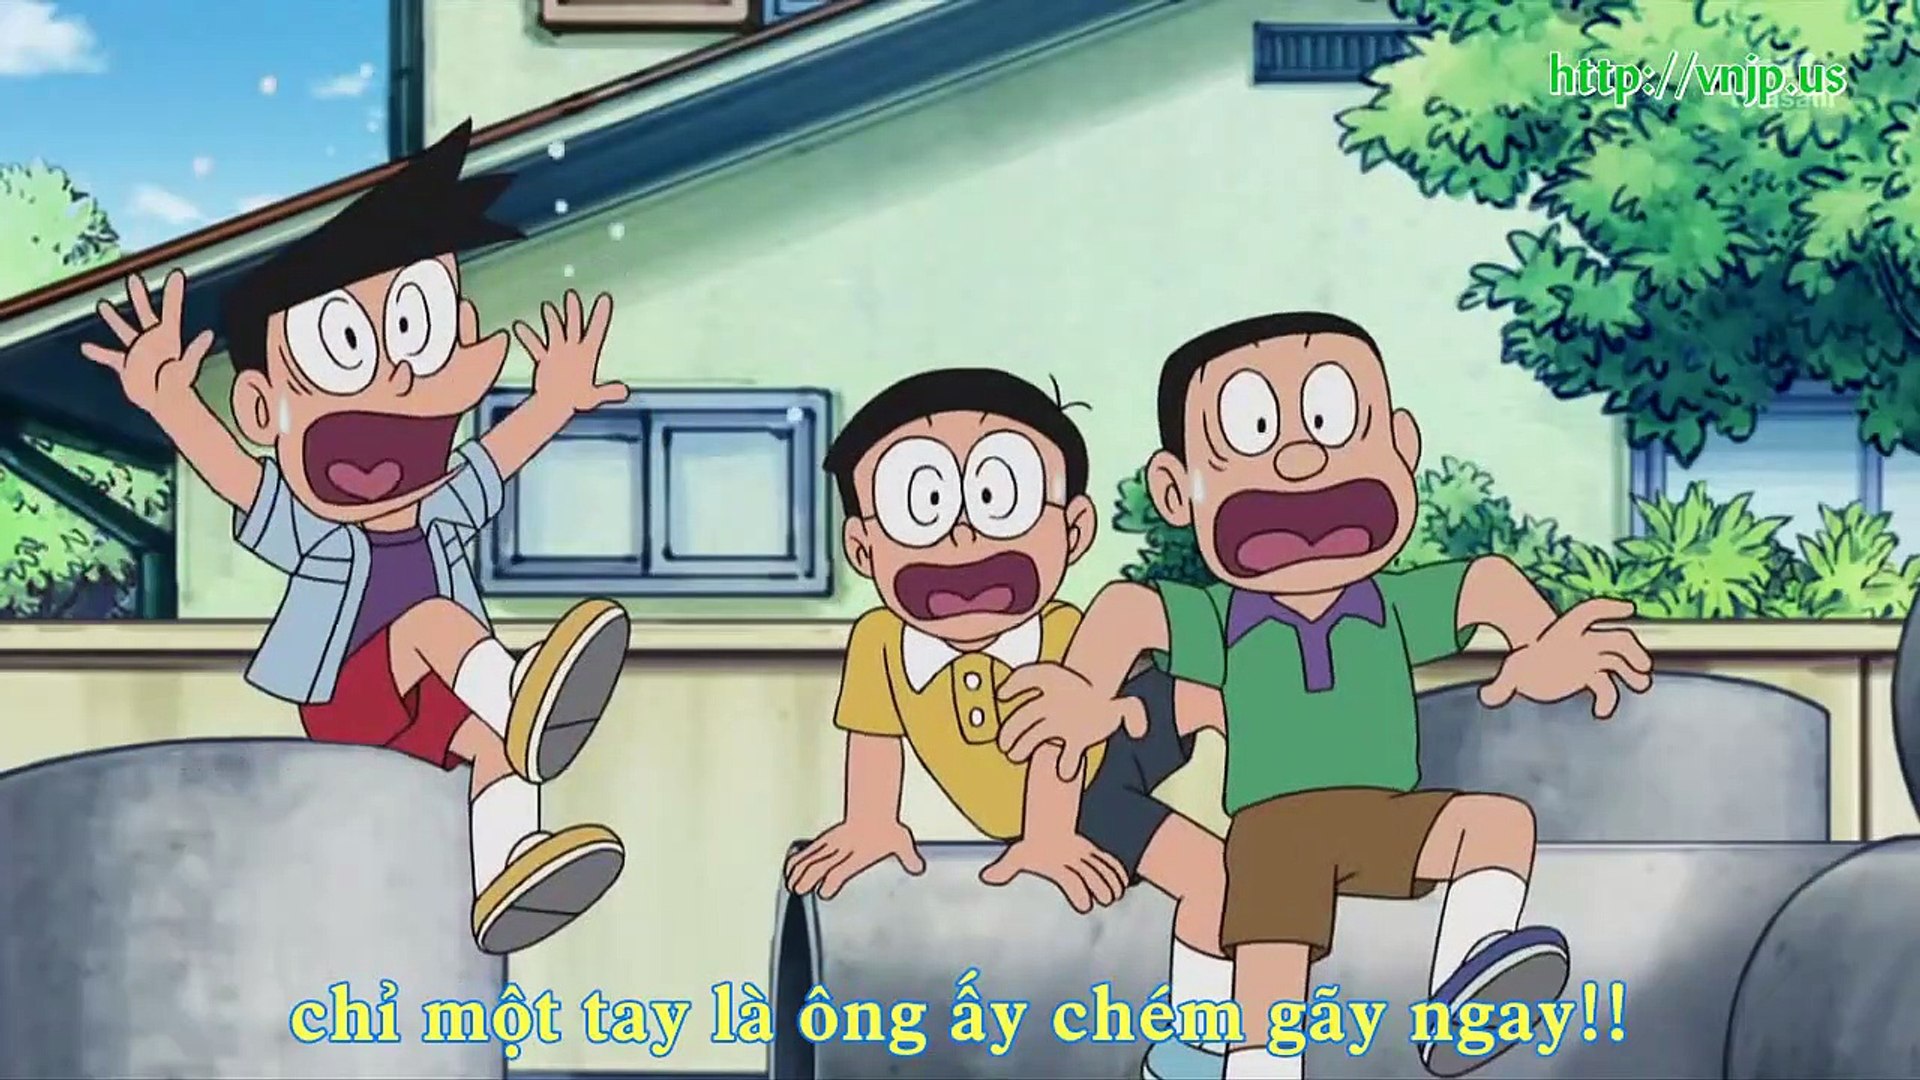 ドラえもん Doraemon Ep 264 ソノウソホント ぼくのすべてをアゲタイ Video Dailymotion